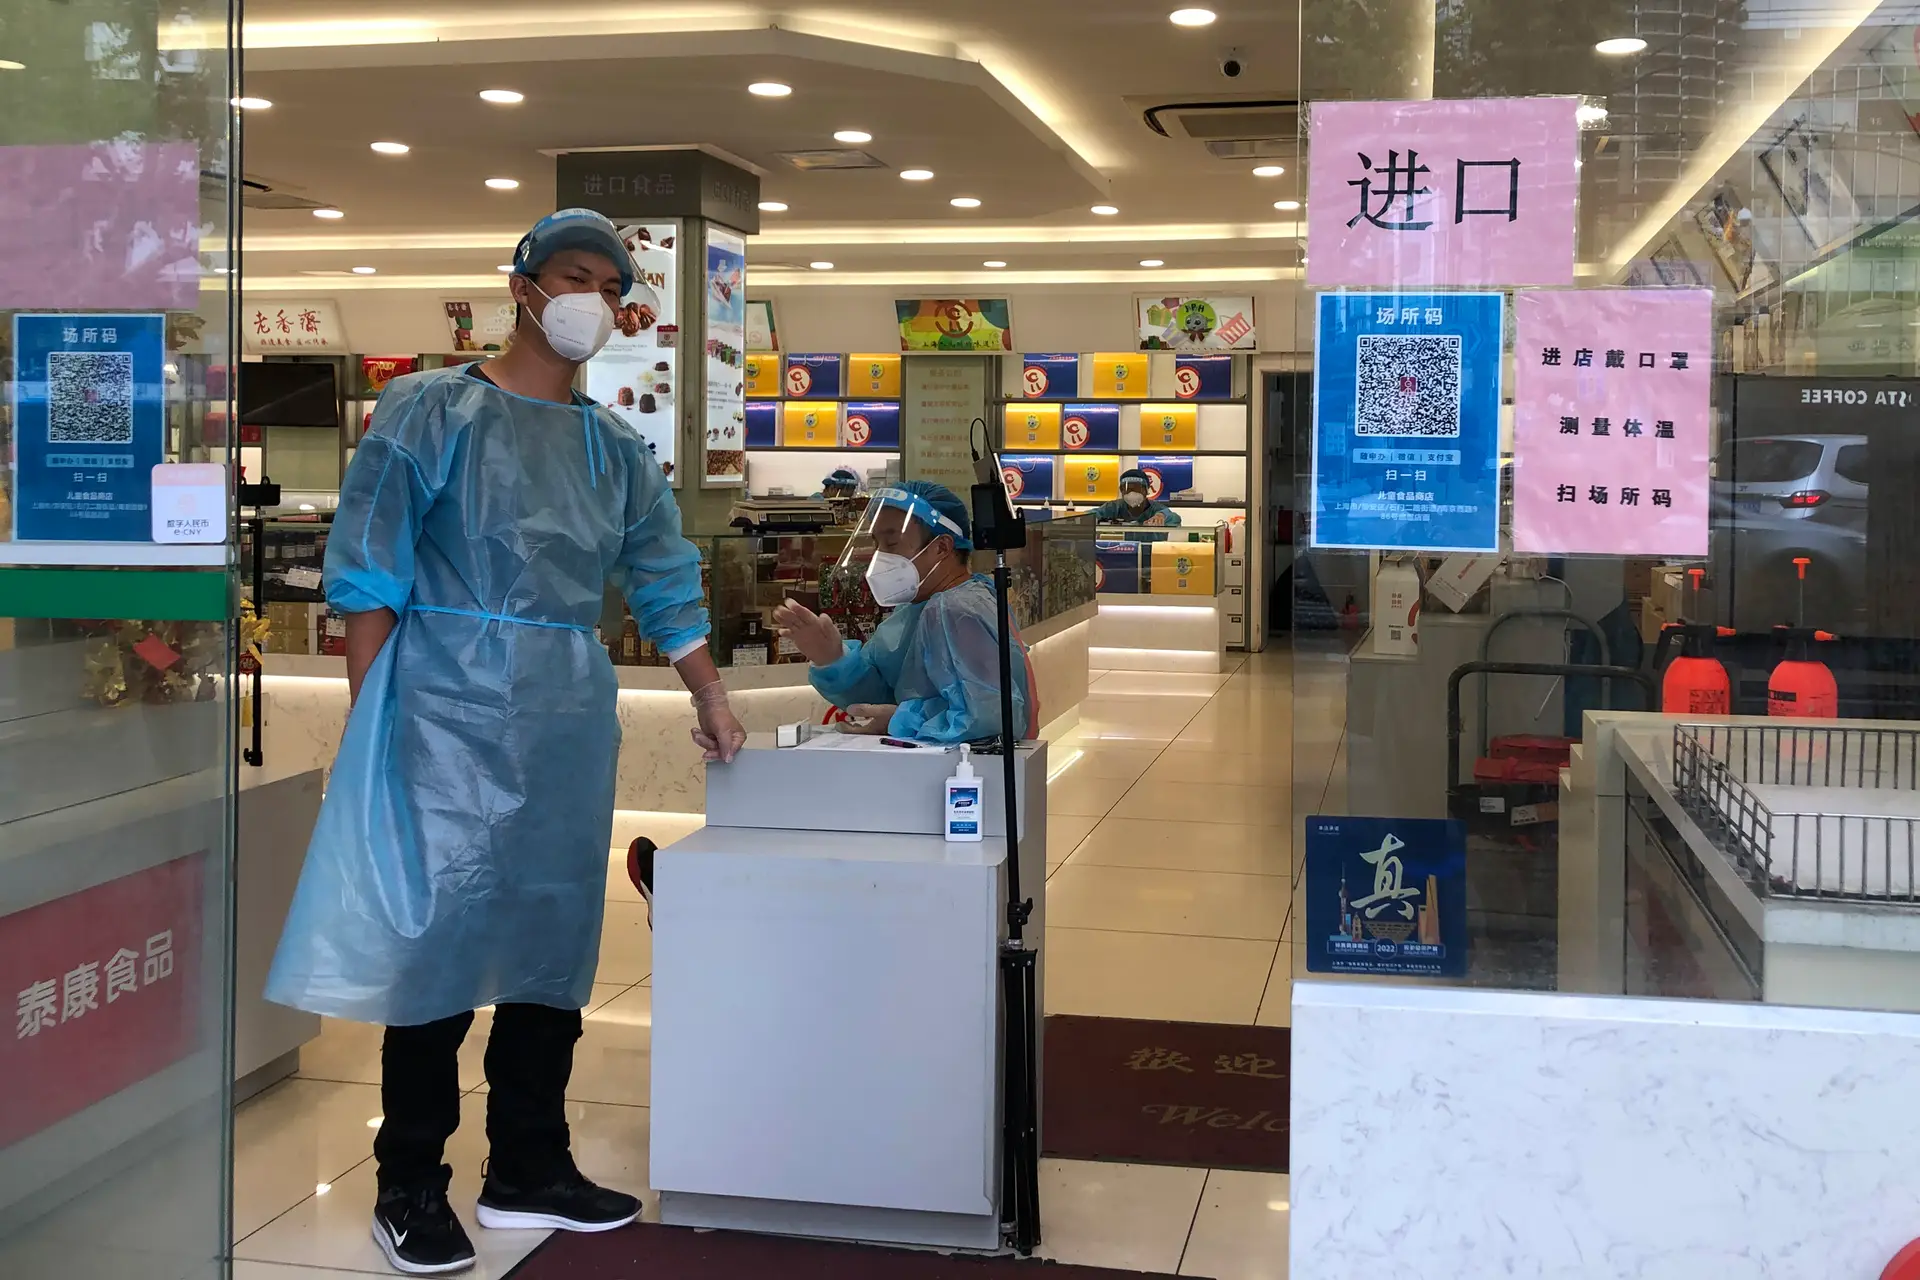 Centro Europeu de Doenças pondera rever risco após aumento de casos de covid-19 na China